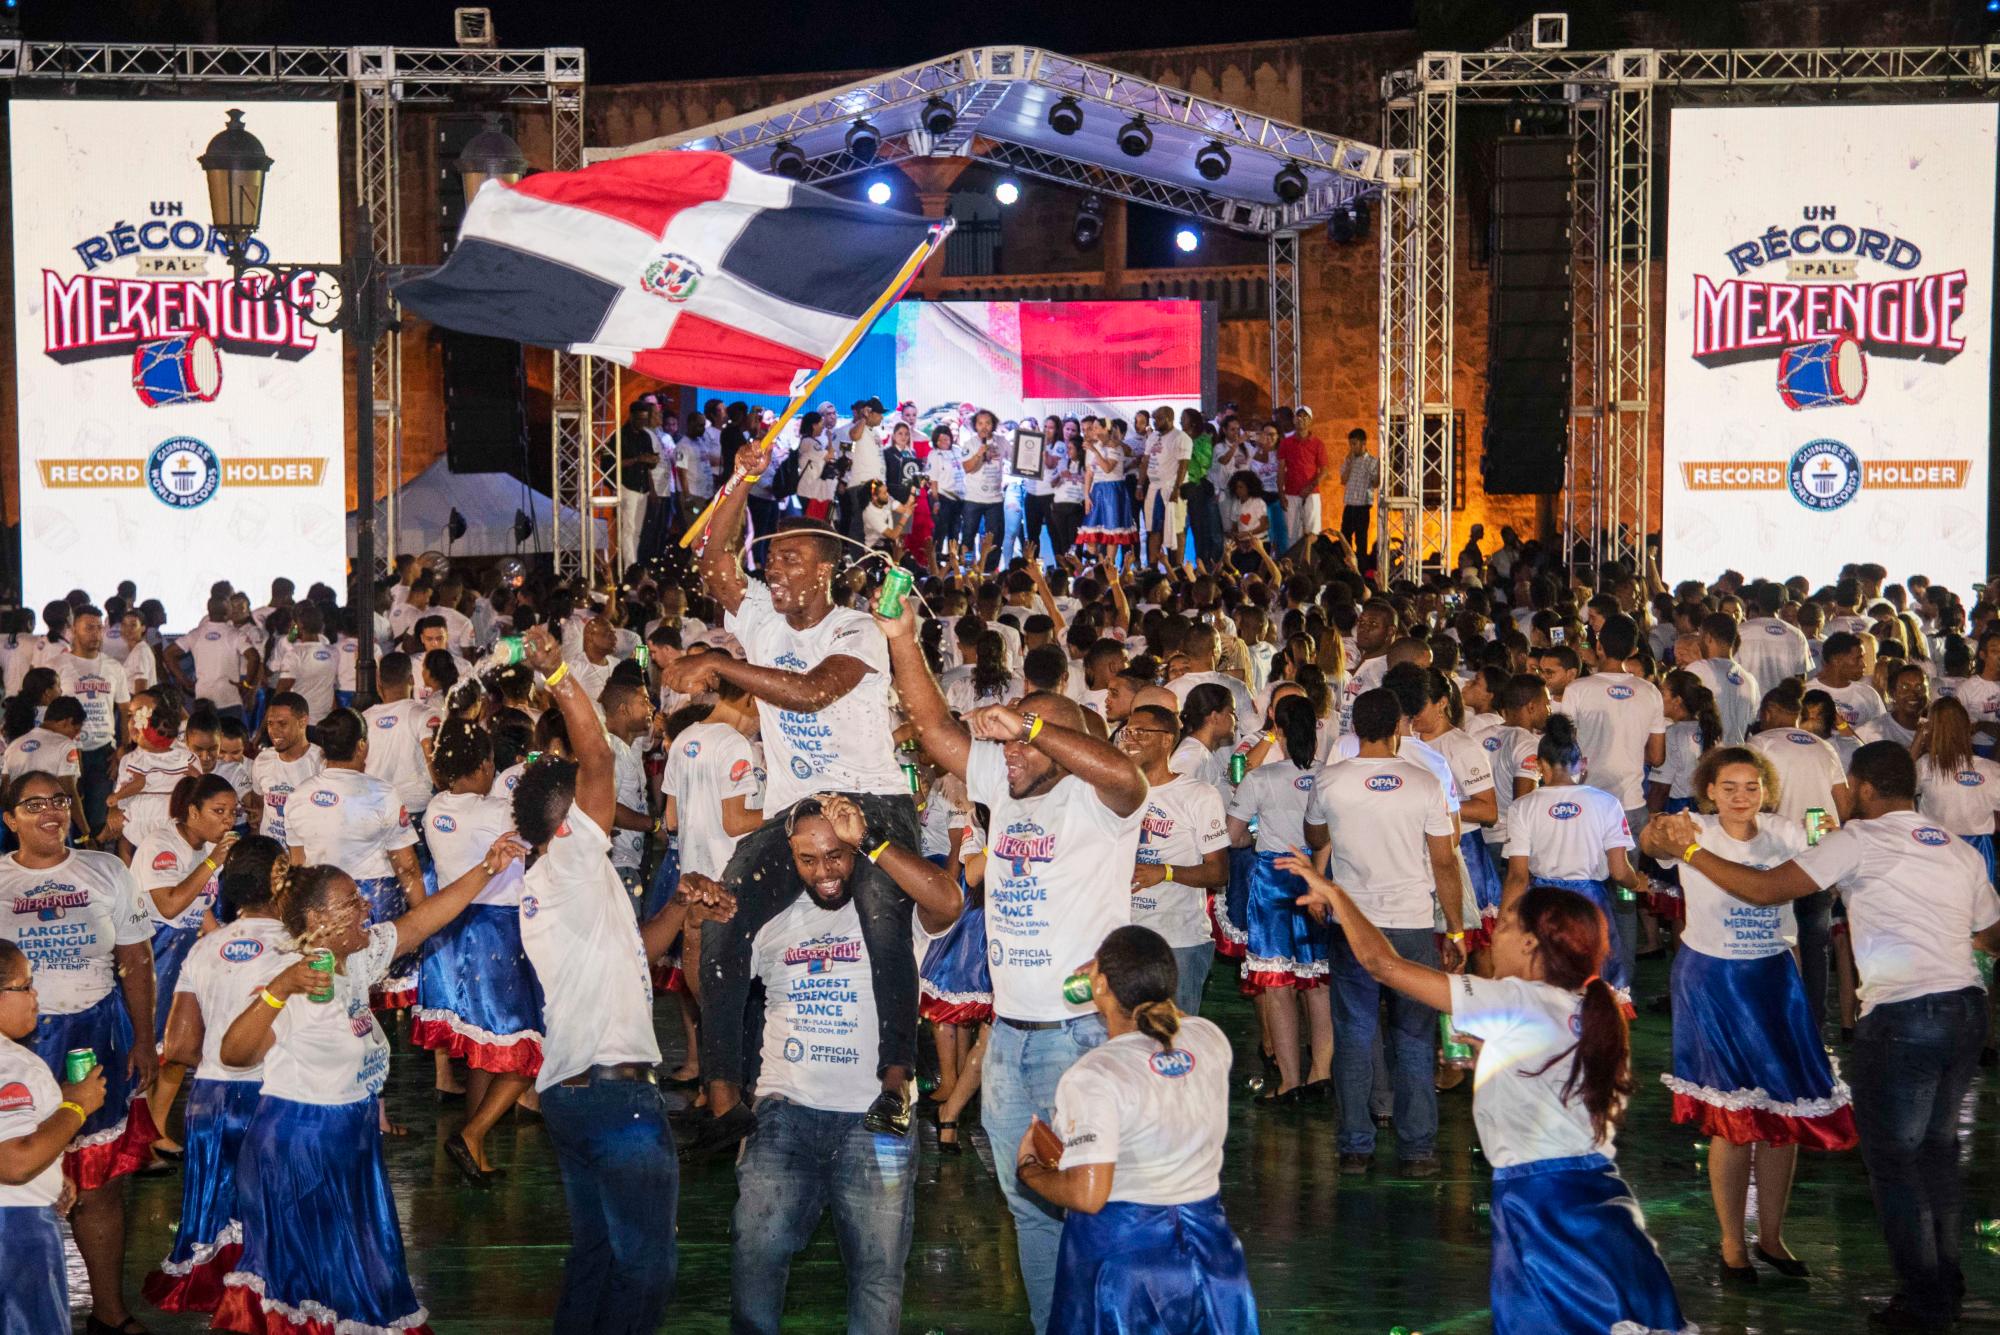 427 parejas dominicanas bailaron al ritmo del “Merengón” en la Plaza España, en el Distrito Nacional, para superar el récord mundial certificado por el libro de Guinness World Record a la mayor cantidad de parejas bailando simultáneamente merengue, que pertenecía a Rusia desde el 2013 con 330 parejas.